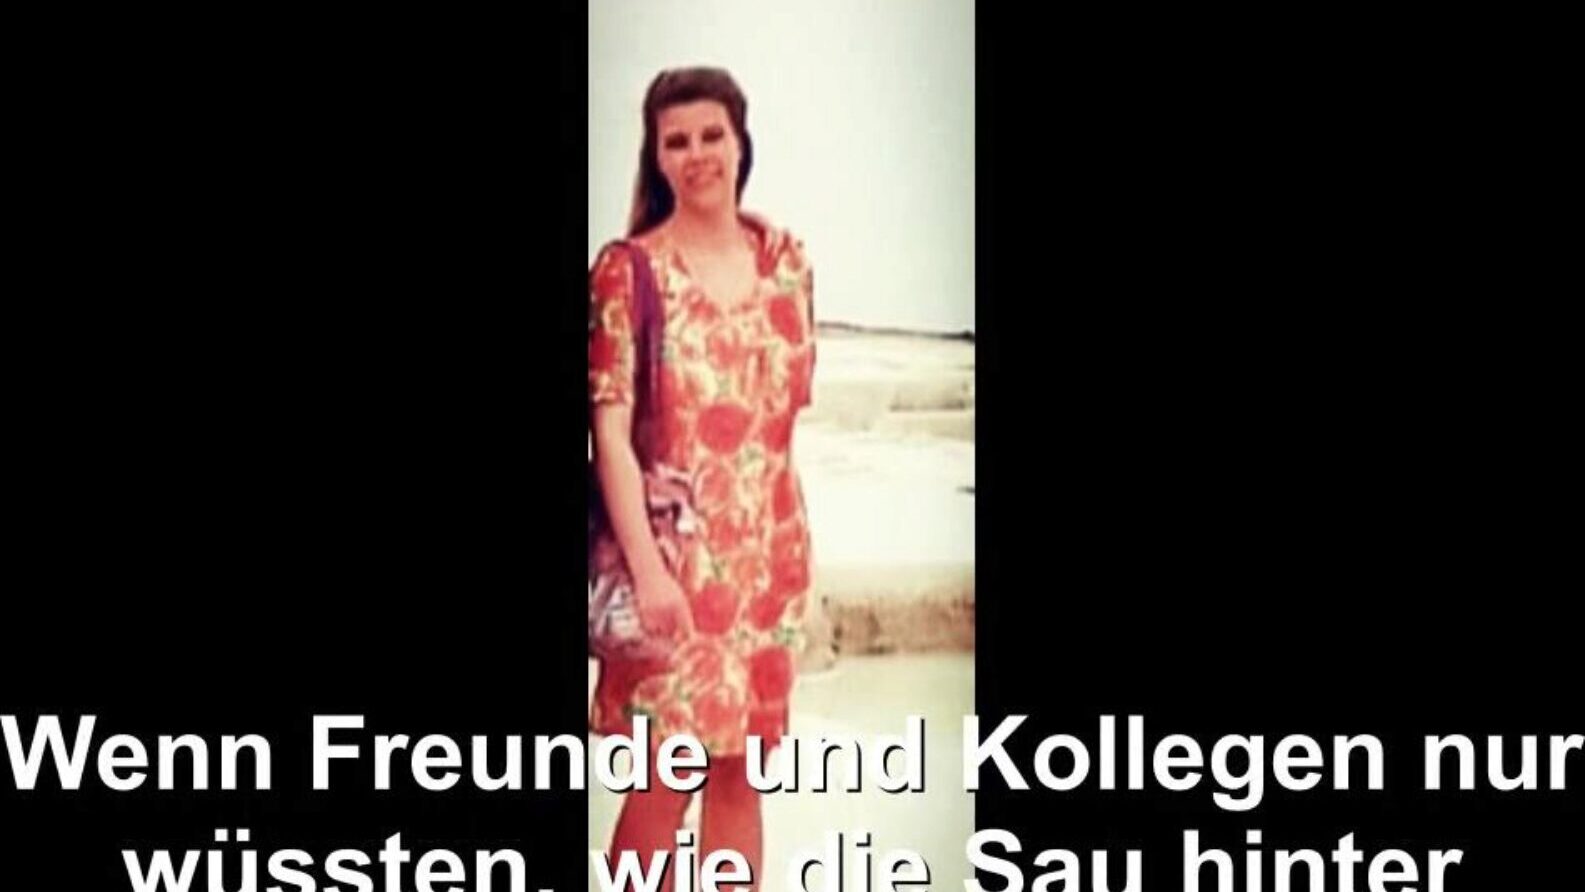 német háziasszony kitett, ingyenes cső német hd pornó bd néz német háziasszony exponált film jelenet a xhamsteren, a legnagyobb hd szerelmi cső weboldalon rengeteg ingyen cső német német feleség és házi készítésű pornó film jelenetek